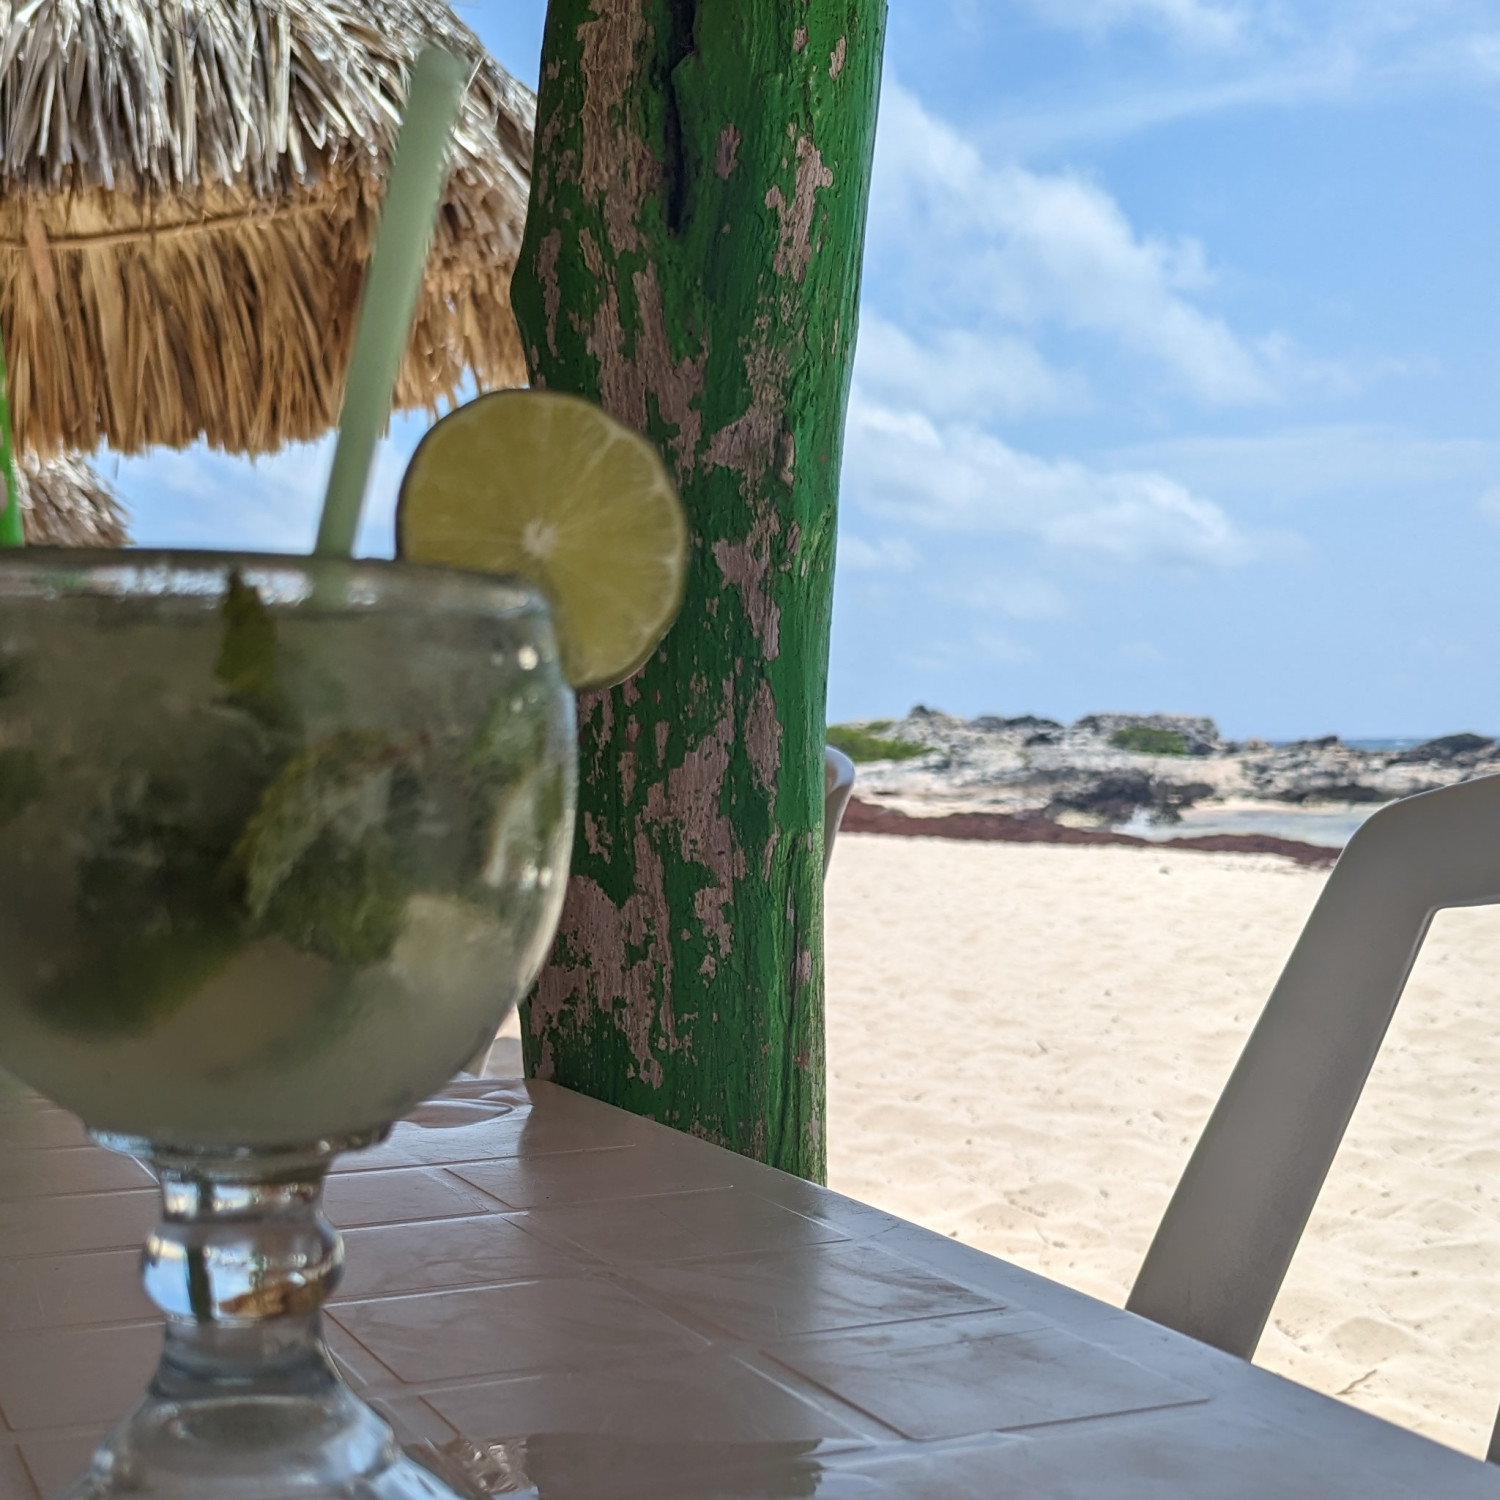 A drink with a nice view at El Pescador.